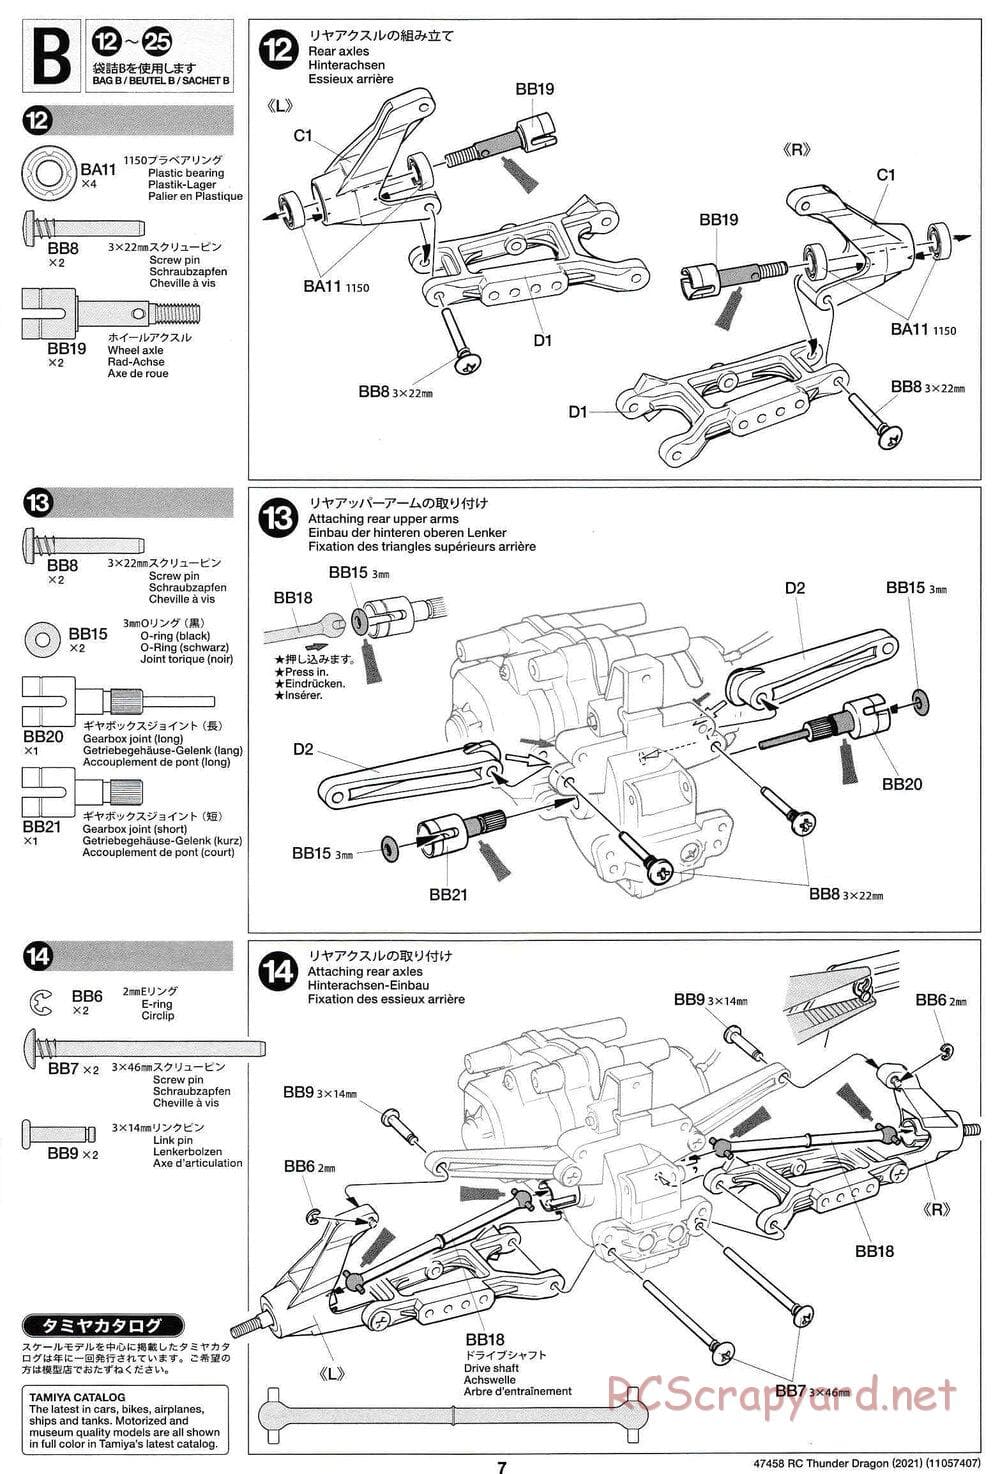 Tamiya - Thunder Dragon (2021) Chassis - Manual - Page 7